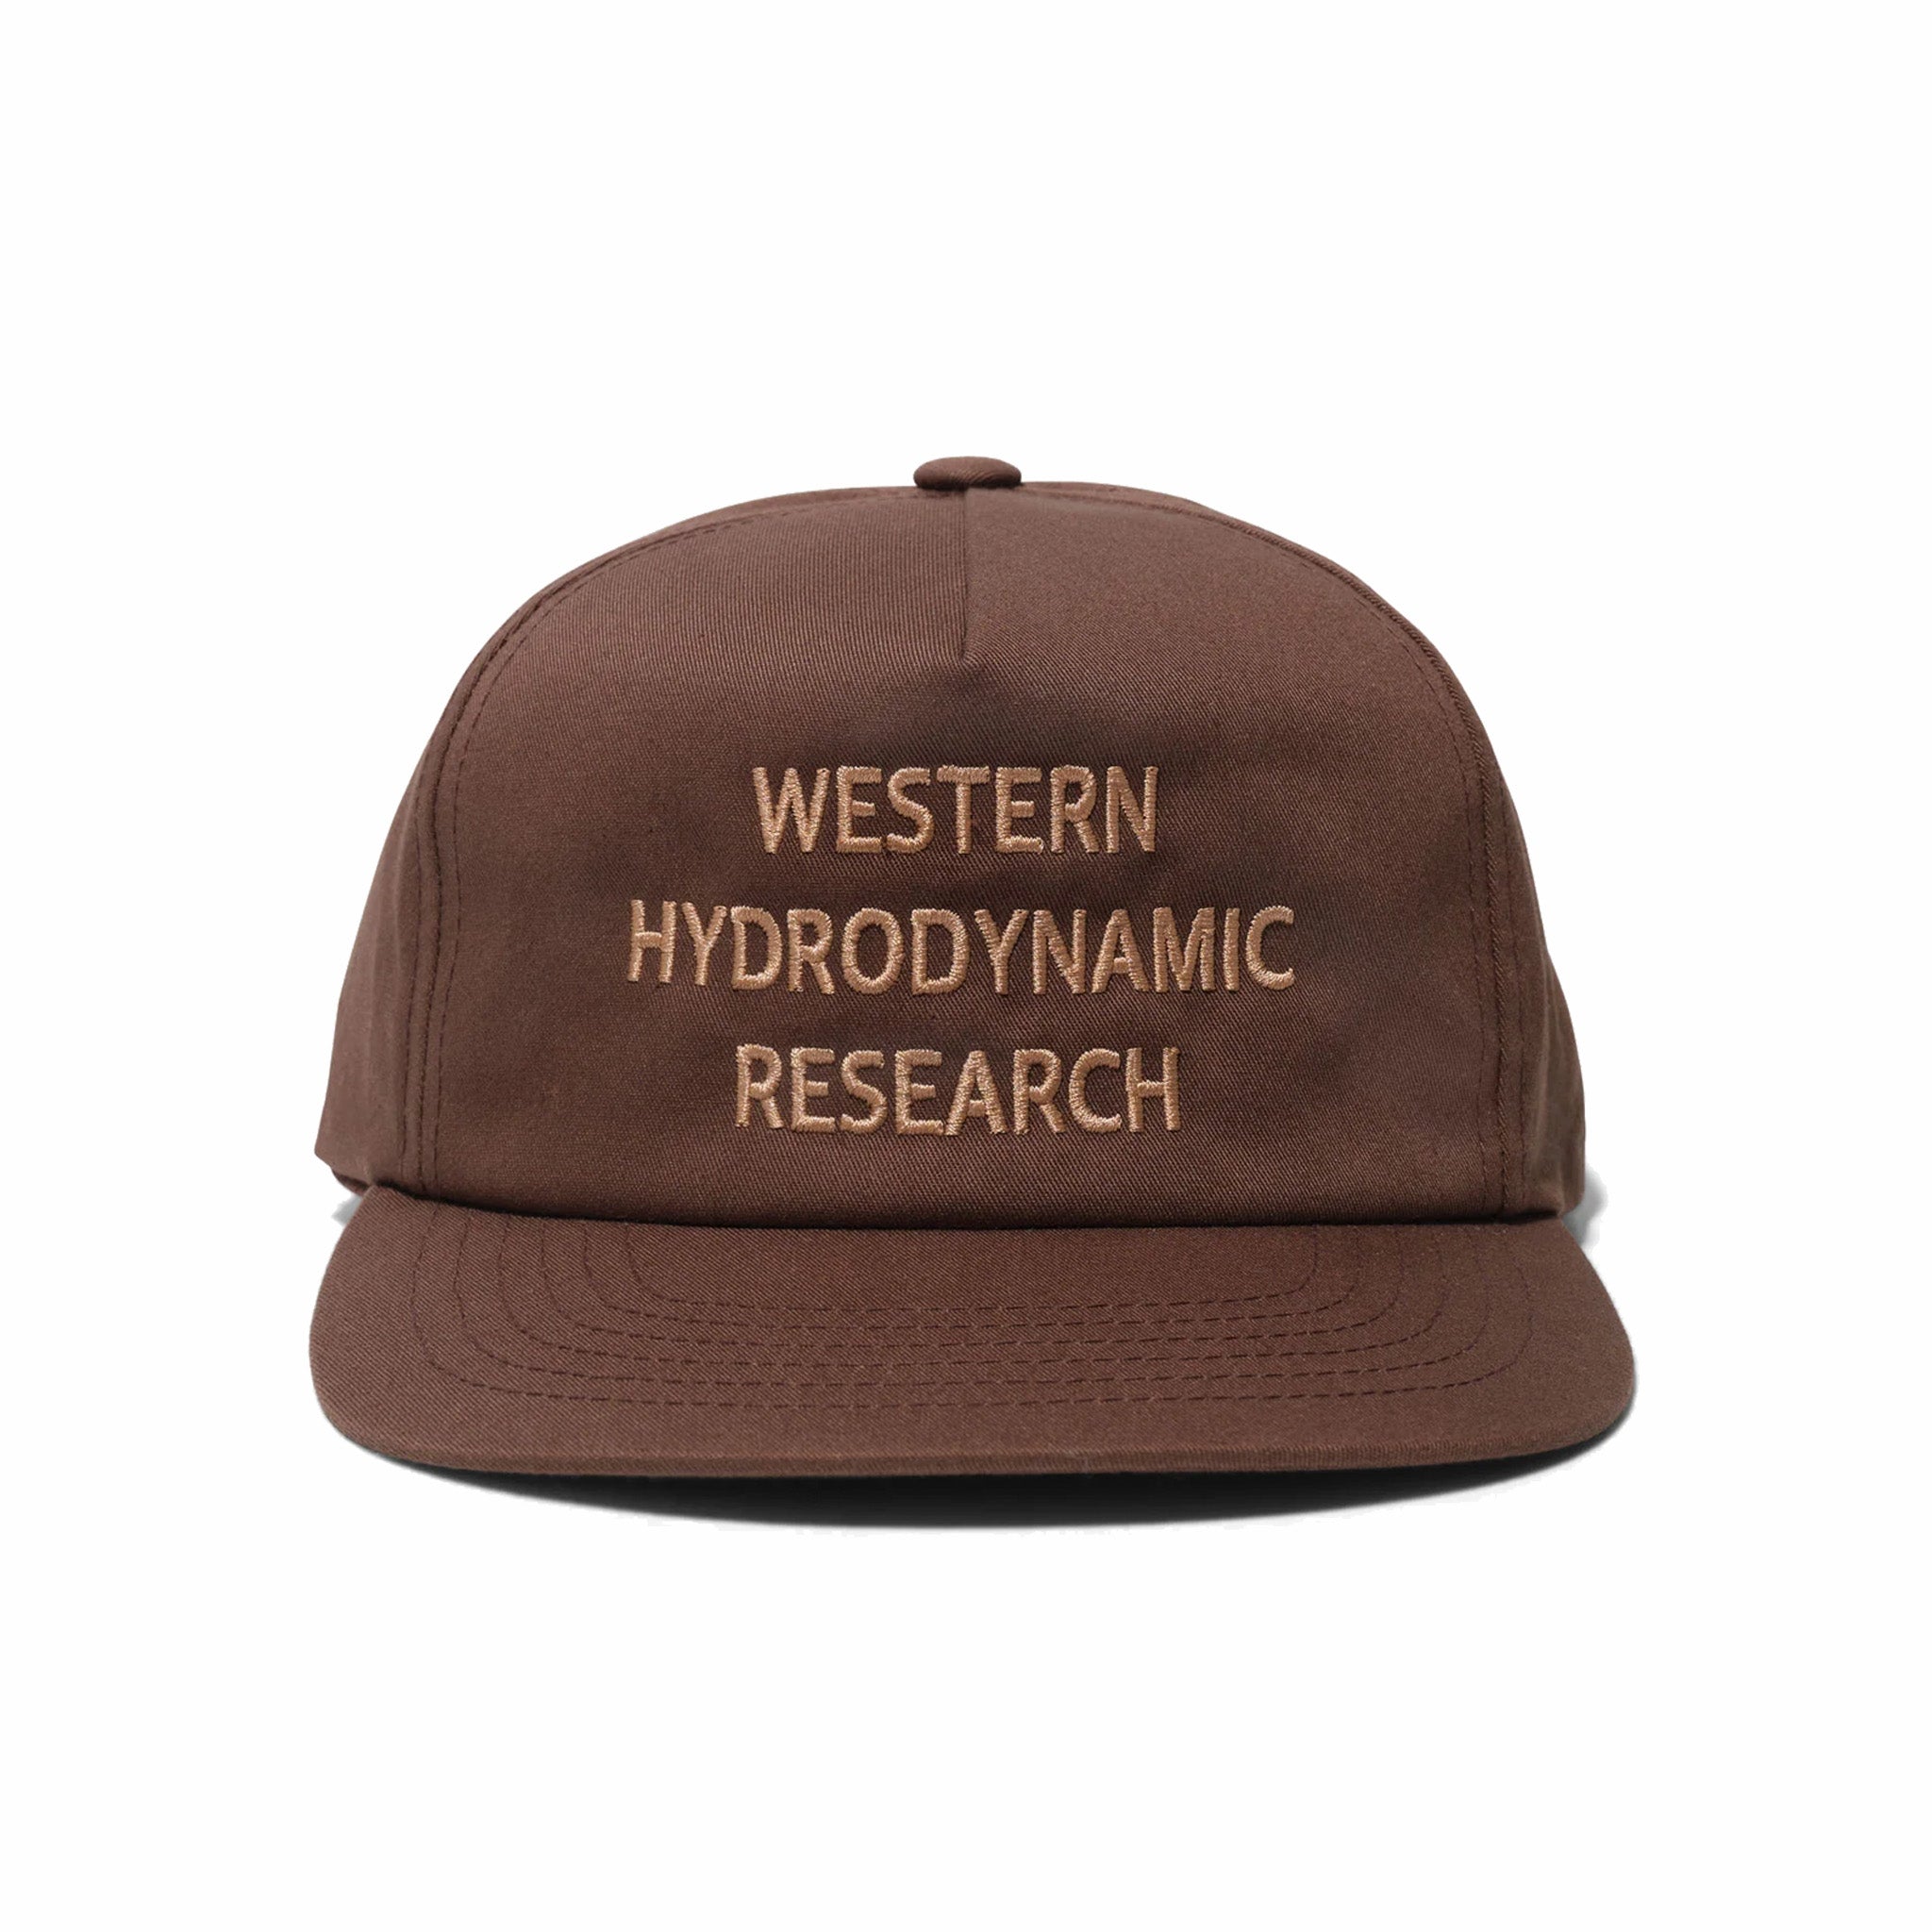 Ricerca idrodinamica occidentale, Cappello promozionale Western Hydrodynamic Research (marrone/oro)